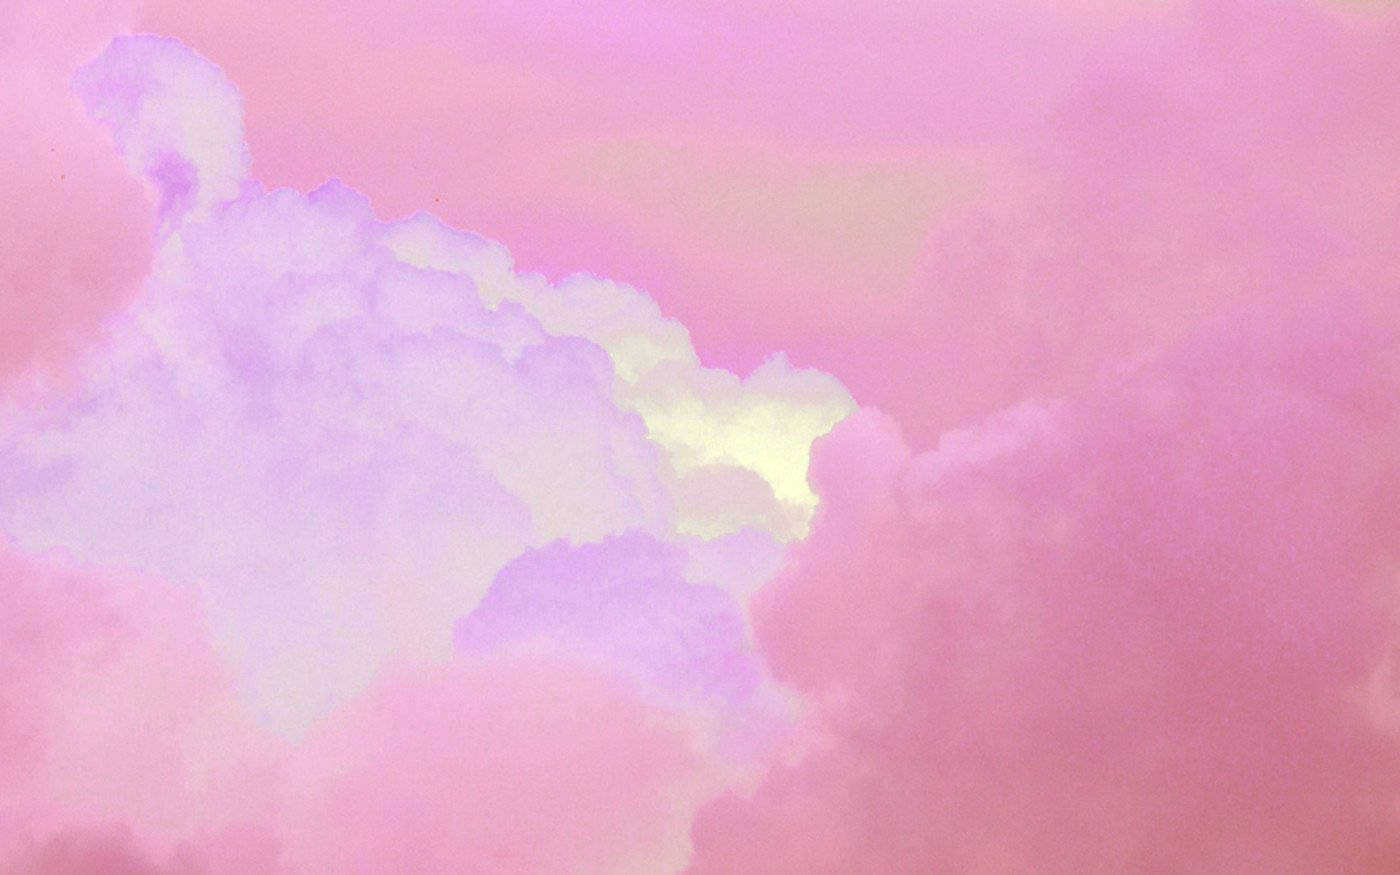 [100+] Pink Cloud Wallpapers | Wallpapers.com